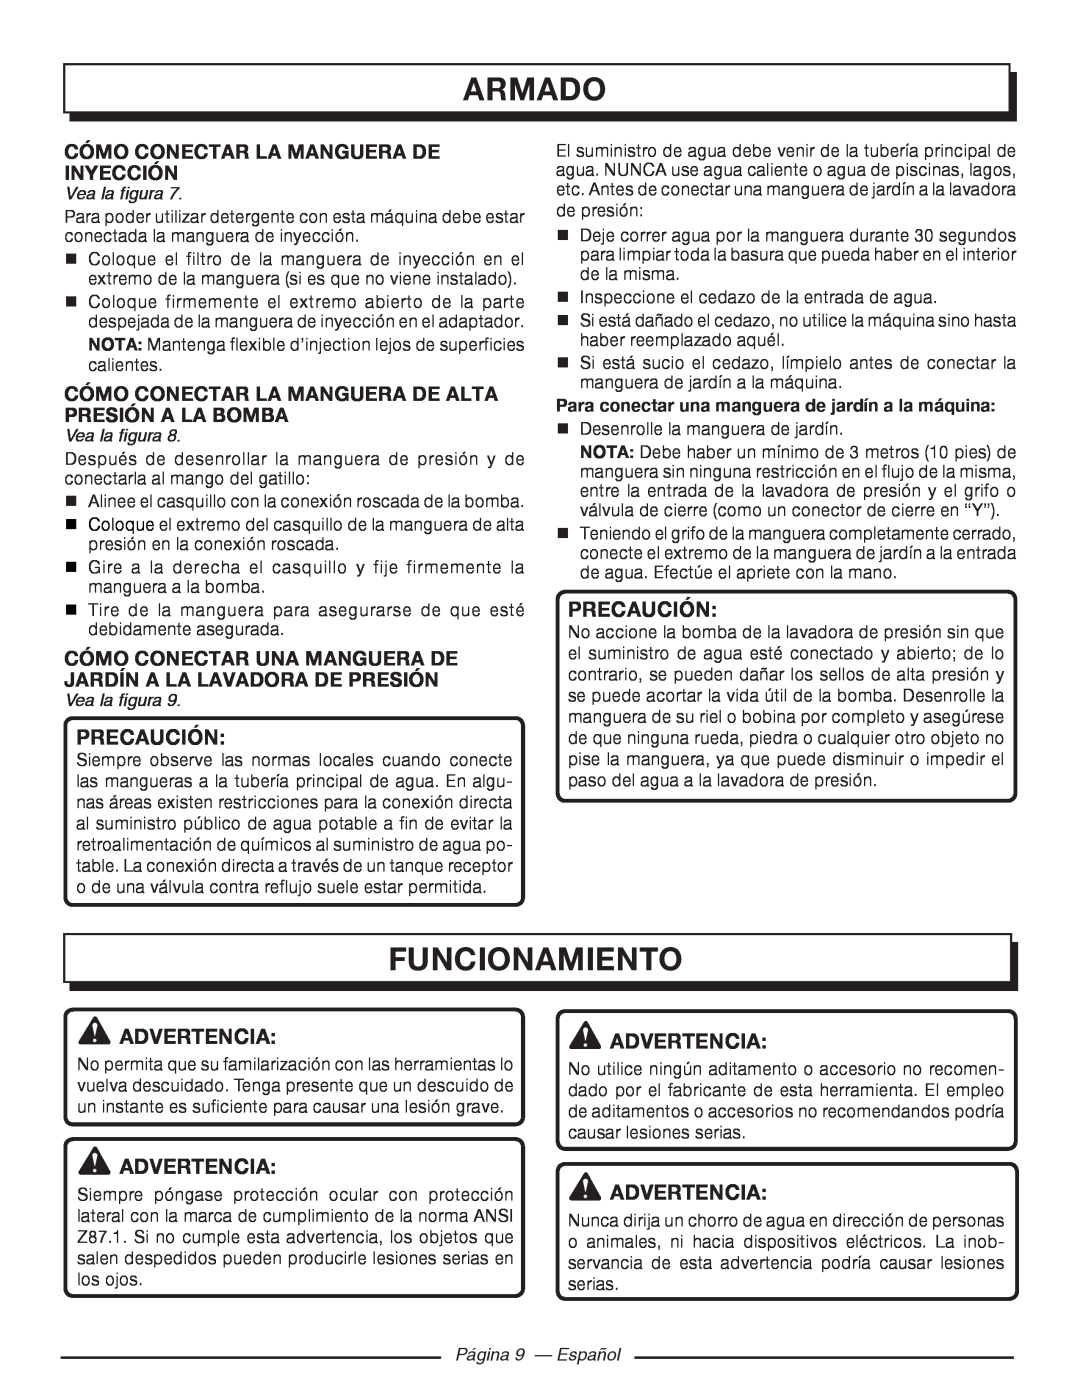 Homelite UT80546, UT80977 Funcionamiento, Cómo Conectar La Manguera De Inyección, Página 9 - Español, Armado, Precaución 